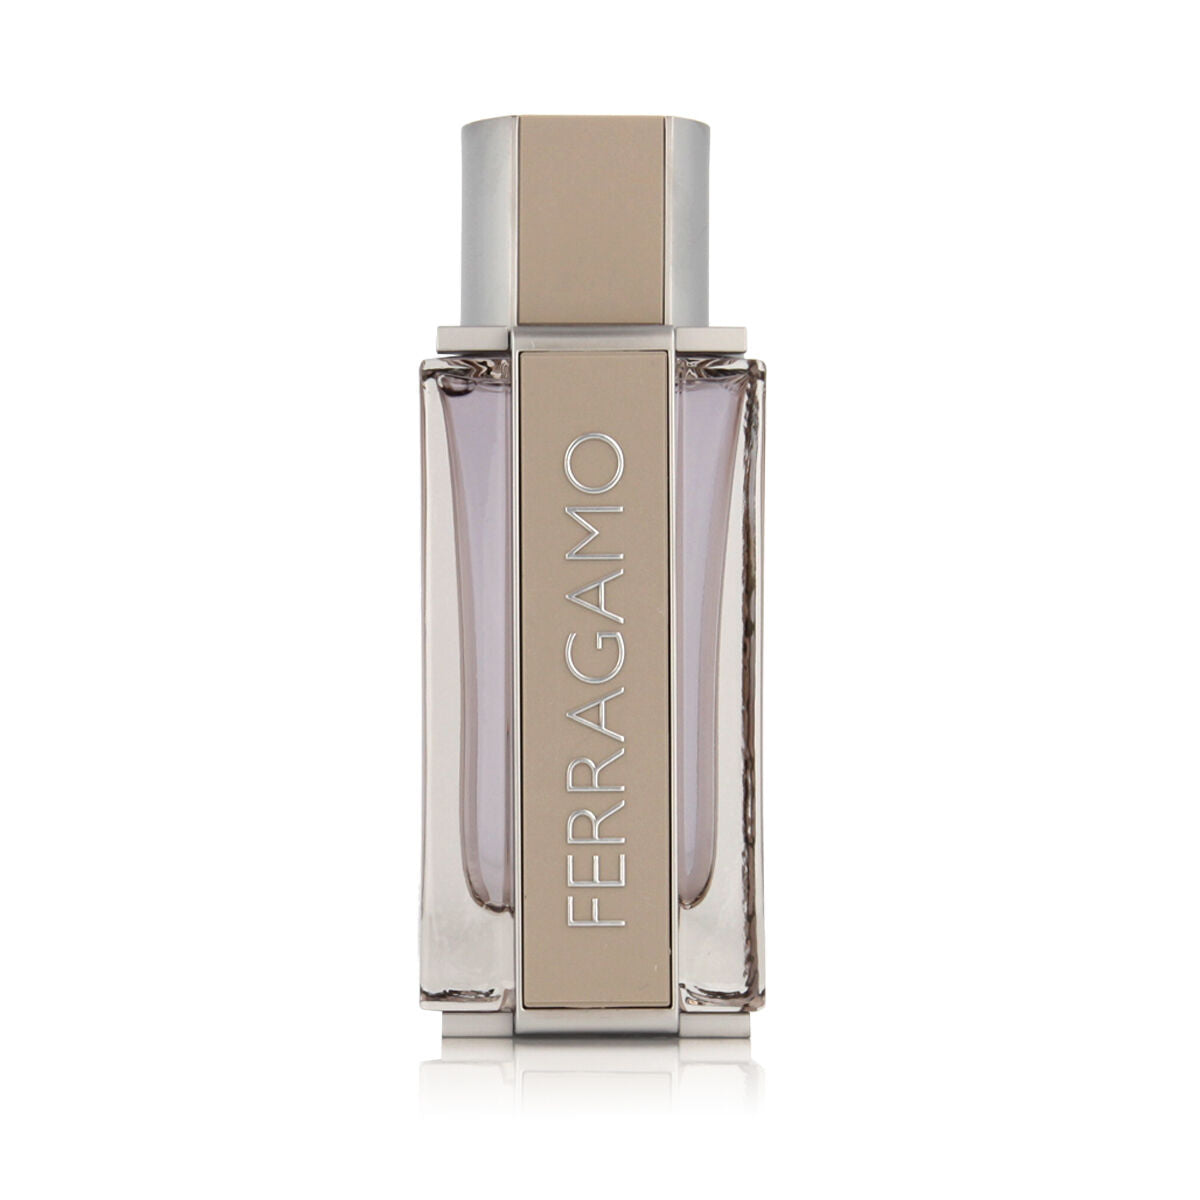 Men's Perfume Salvatore Ferragamo EDT Ferragamo Bright Leather 100 ml –  Bricini Cosmetics